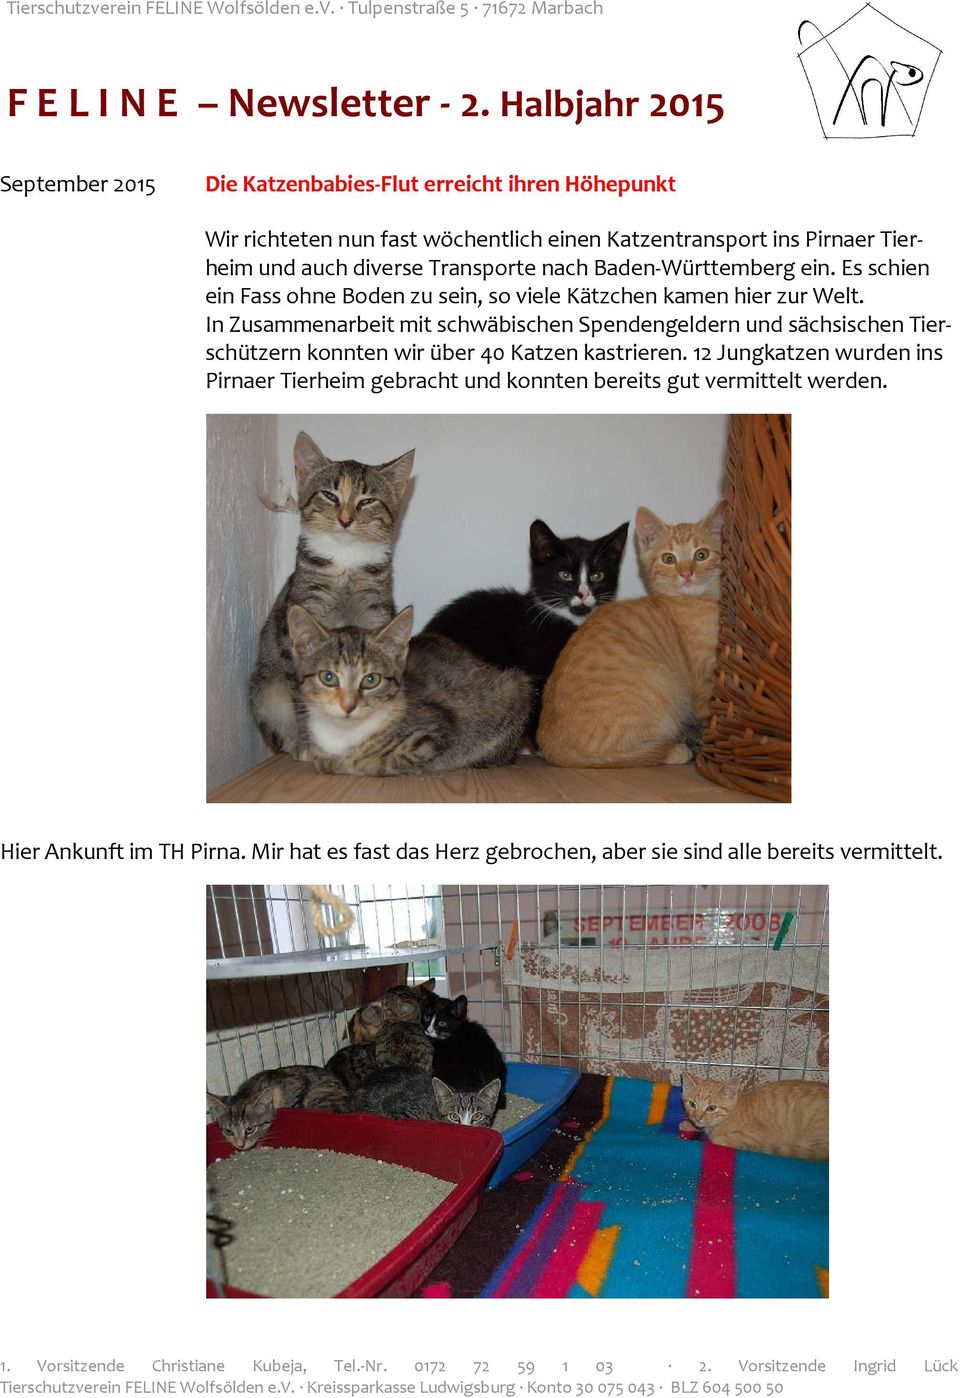 In Zusammenarbeit mit schwäbischen Spendengeldern und sächsischen Tierschützern konnten wir über 40 Katzen kastrieren.